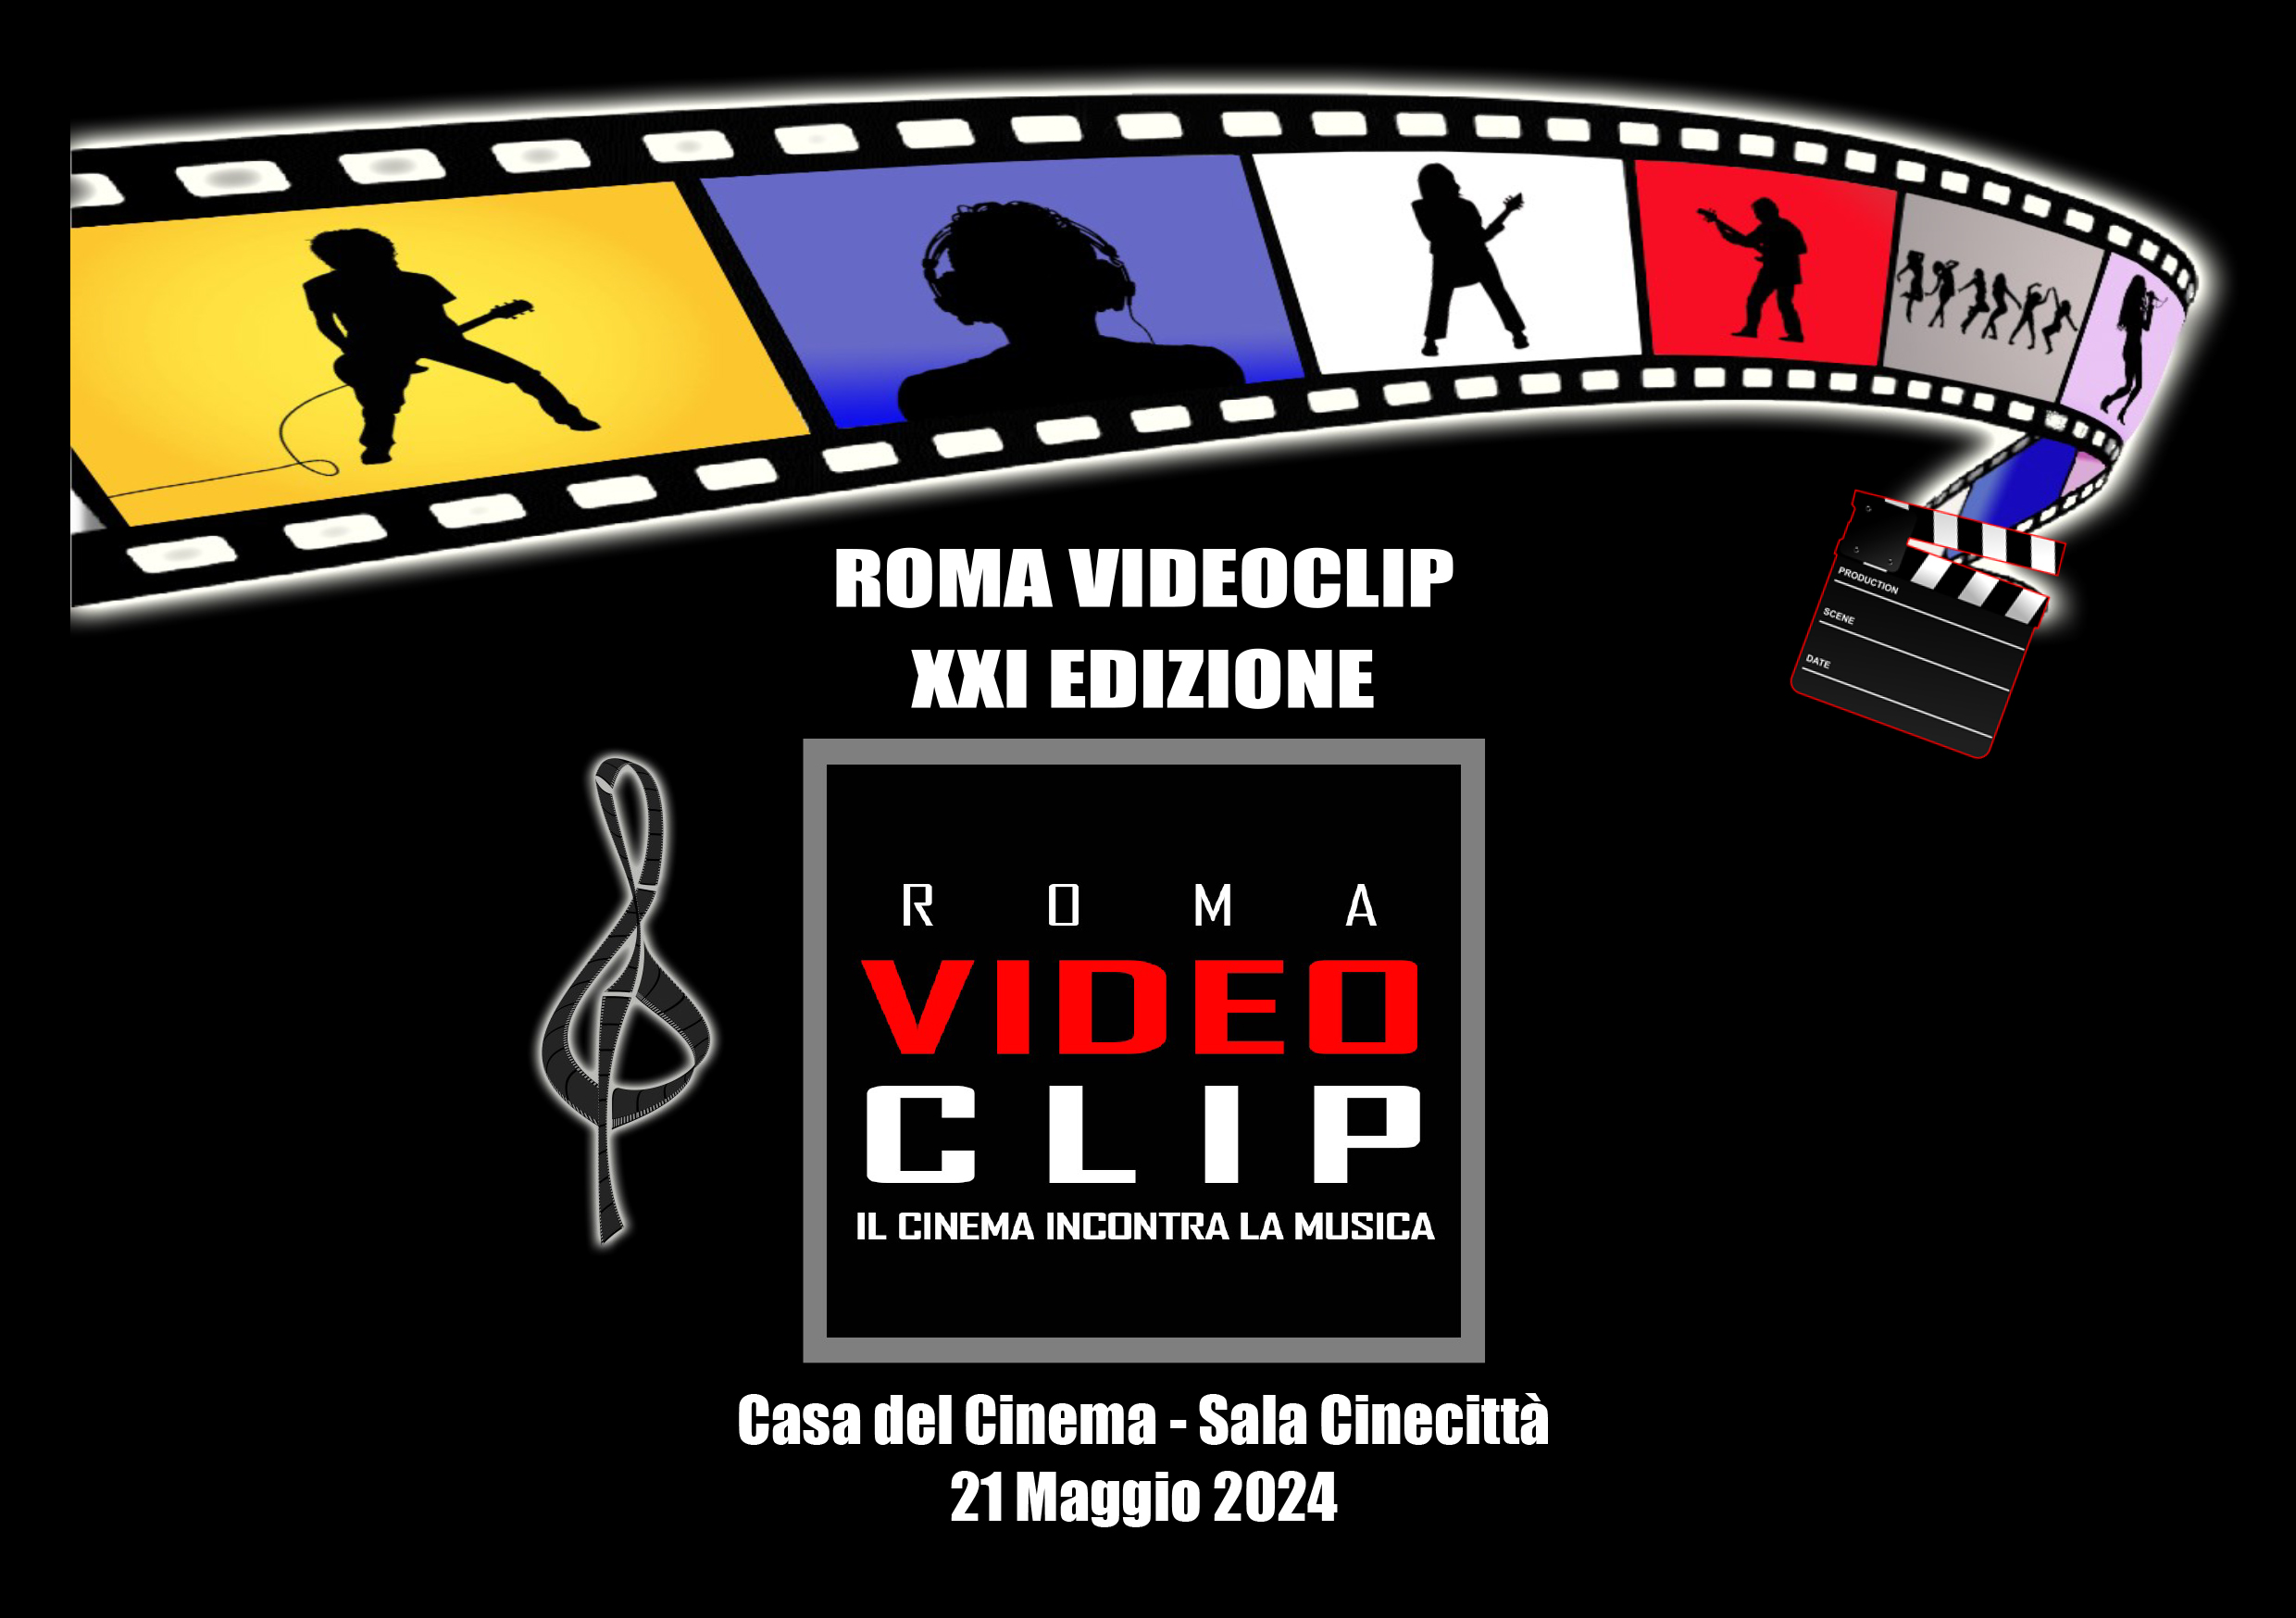 Premio Roma Videoclip-il cinema incontra la musica, il 21 maggio la XXI edizione alla Casa del Cinema di Roma